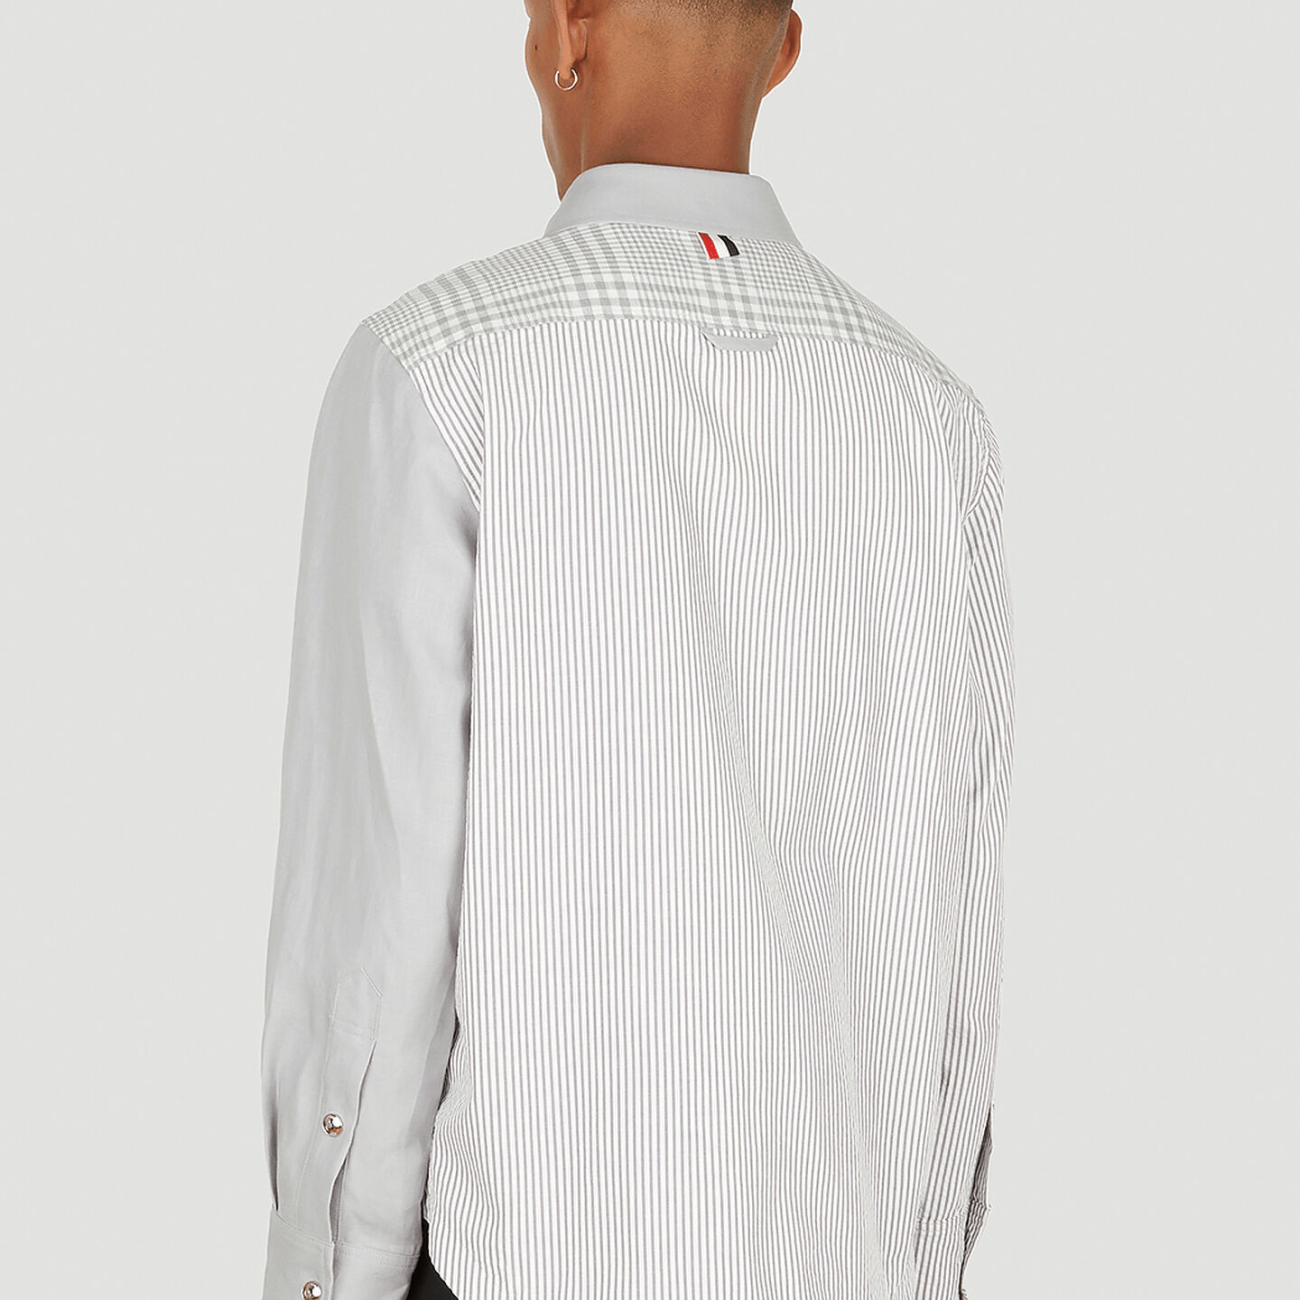 Funmix Crispy Linen Shirt-type Jacket 